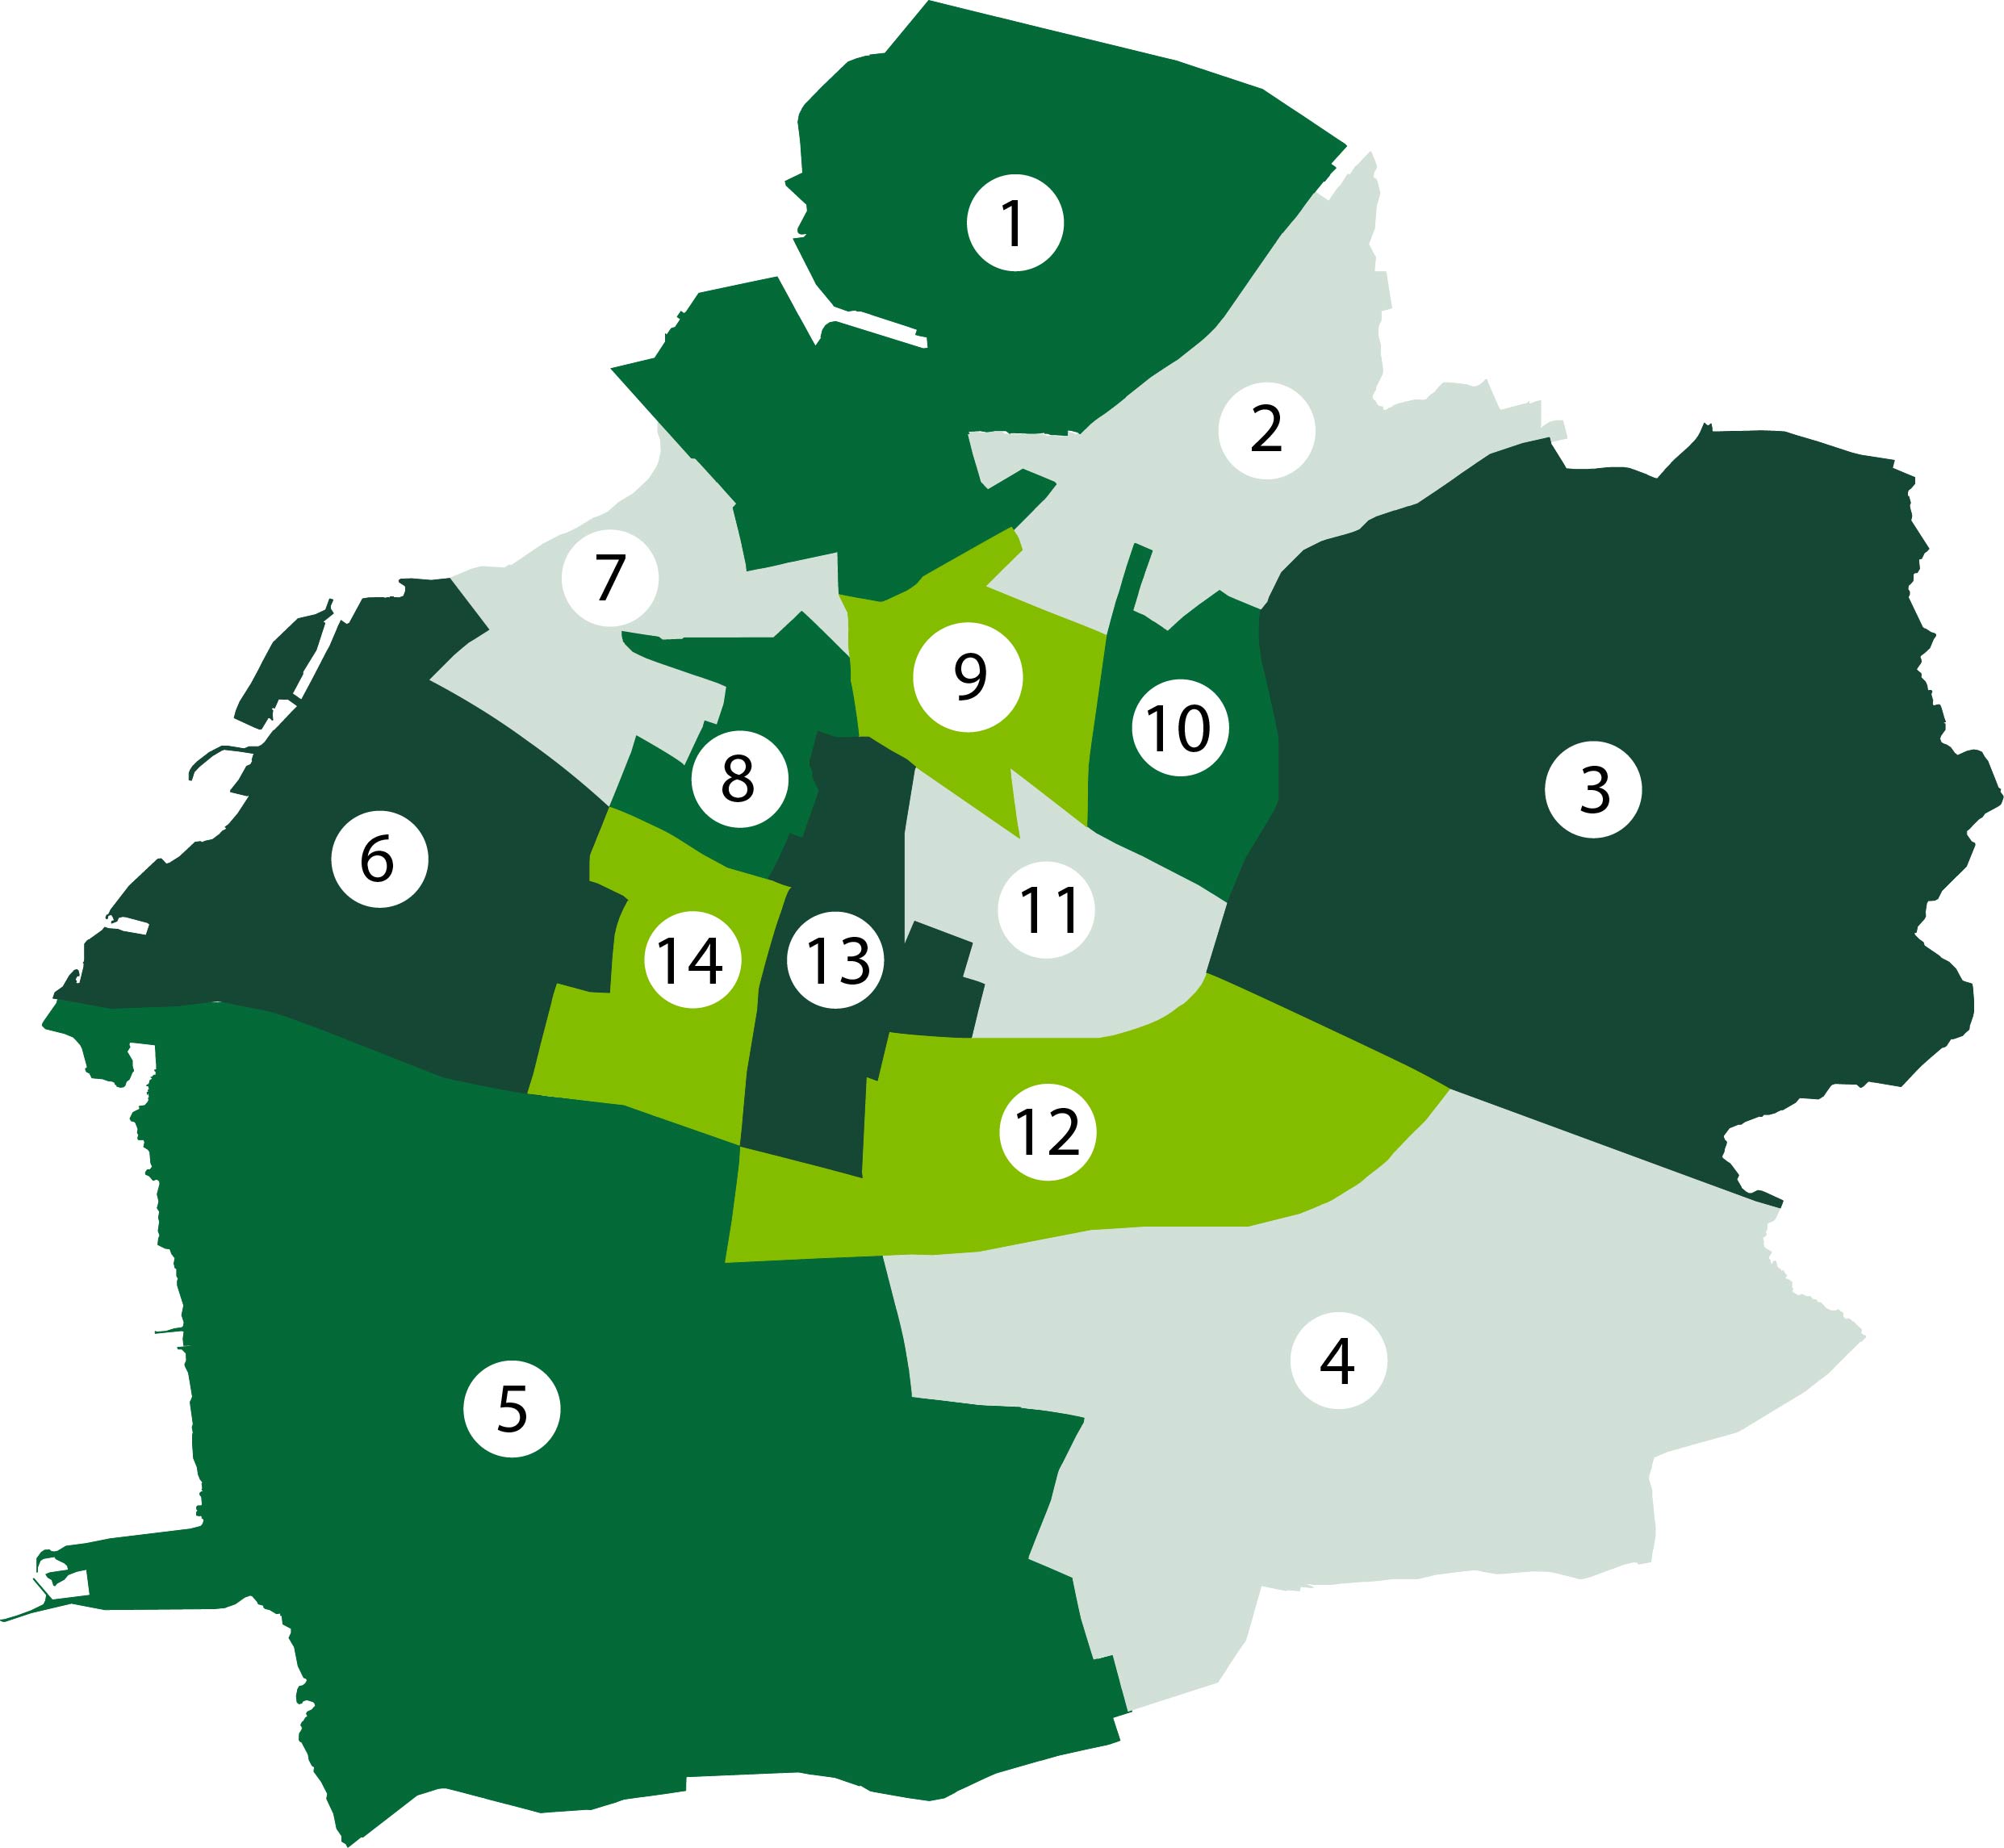 Karta över indelningen av Malmö i 14 delområden. CTC-team finns i områdena 2, 5, 8, 9 och 11.